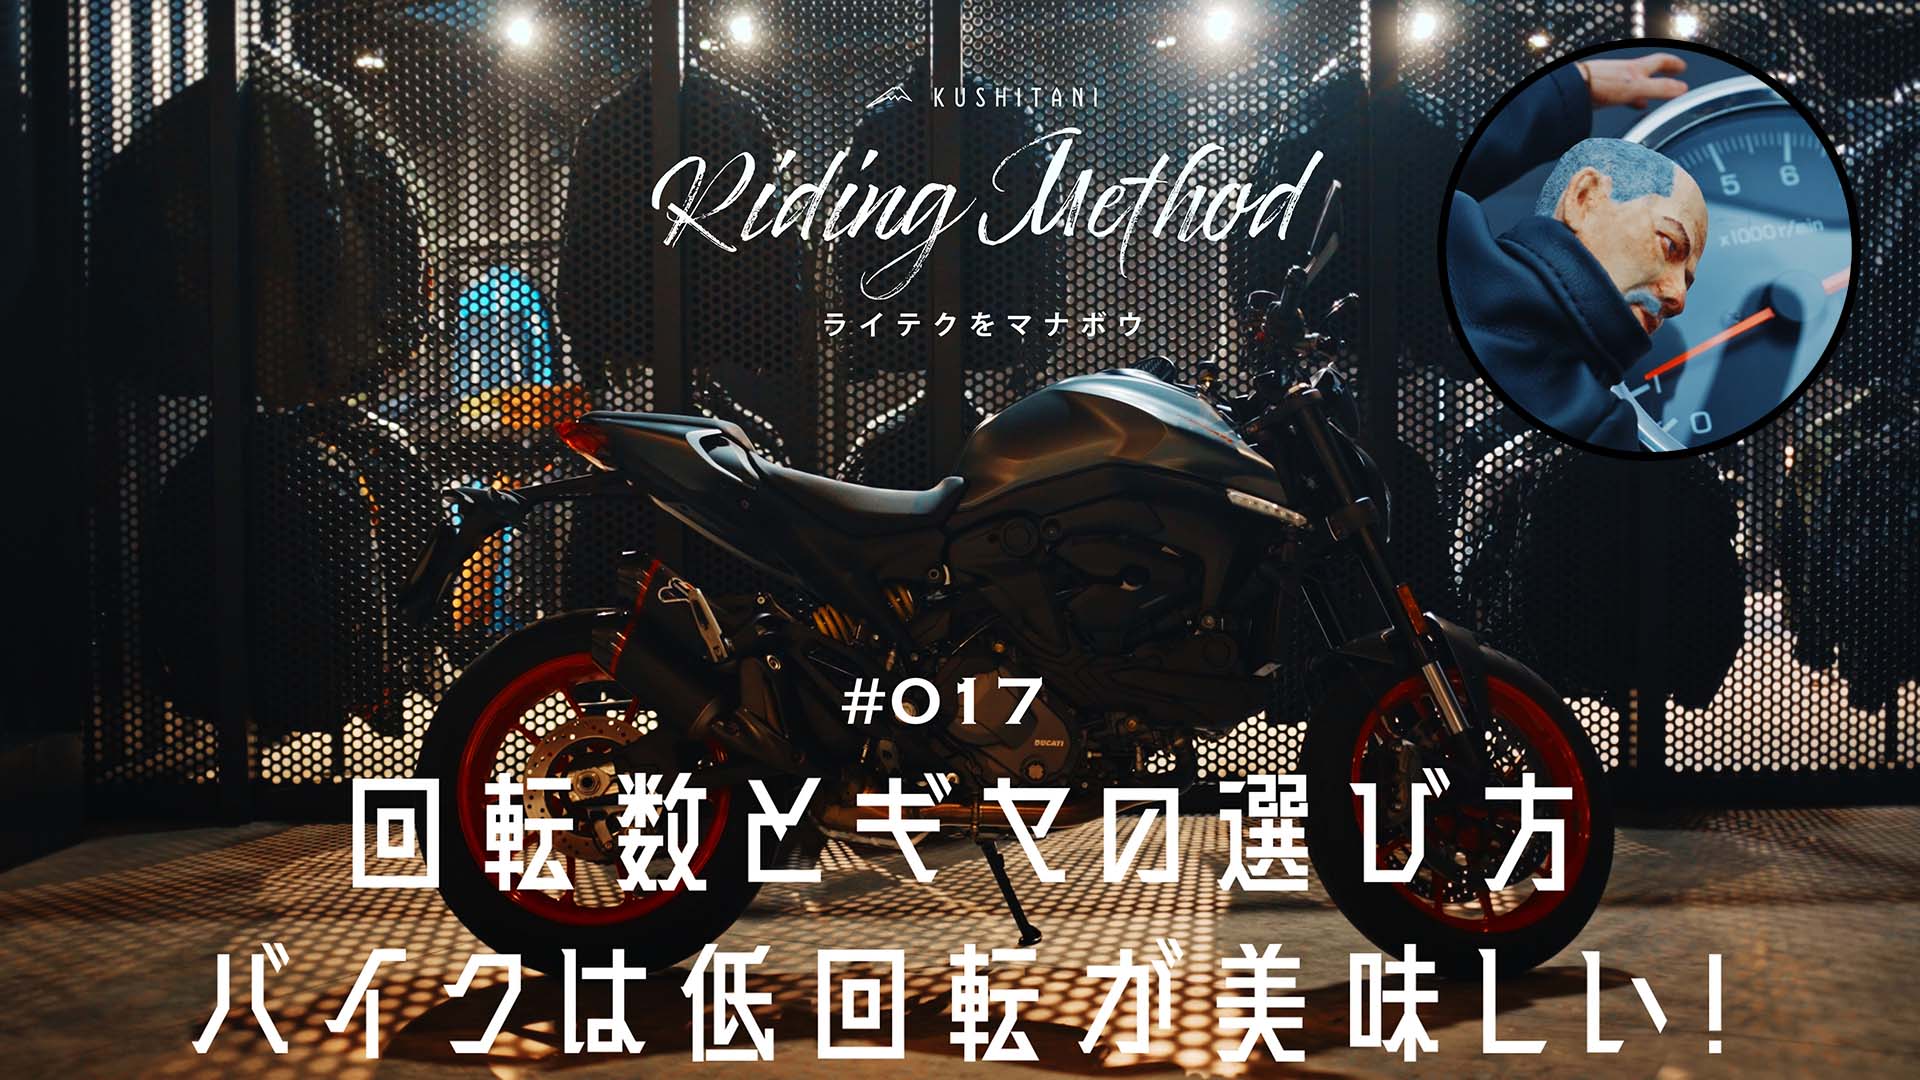 ライテクをマナボウ 17 回転数とギヤの選び方 バイクは低回転が美味しい Kushitani Riding Method Kushitani Logs